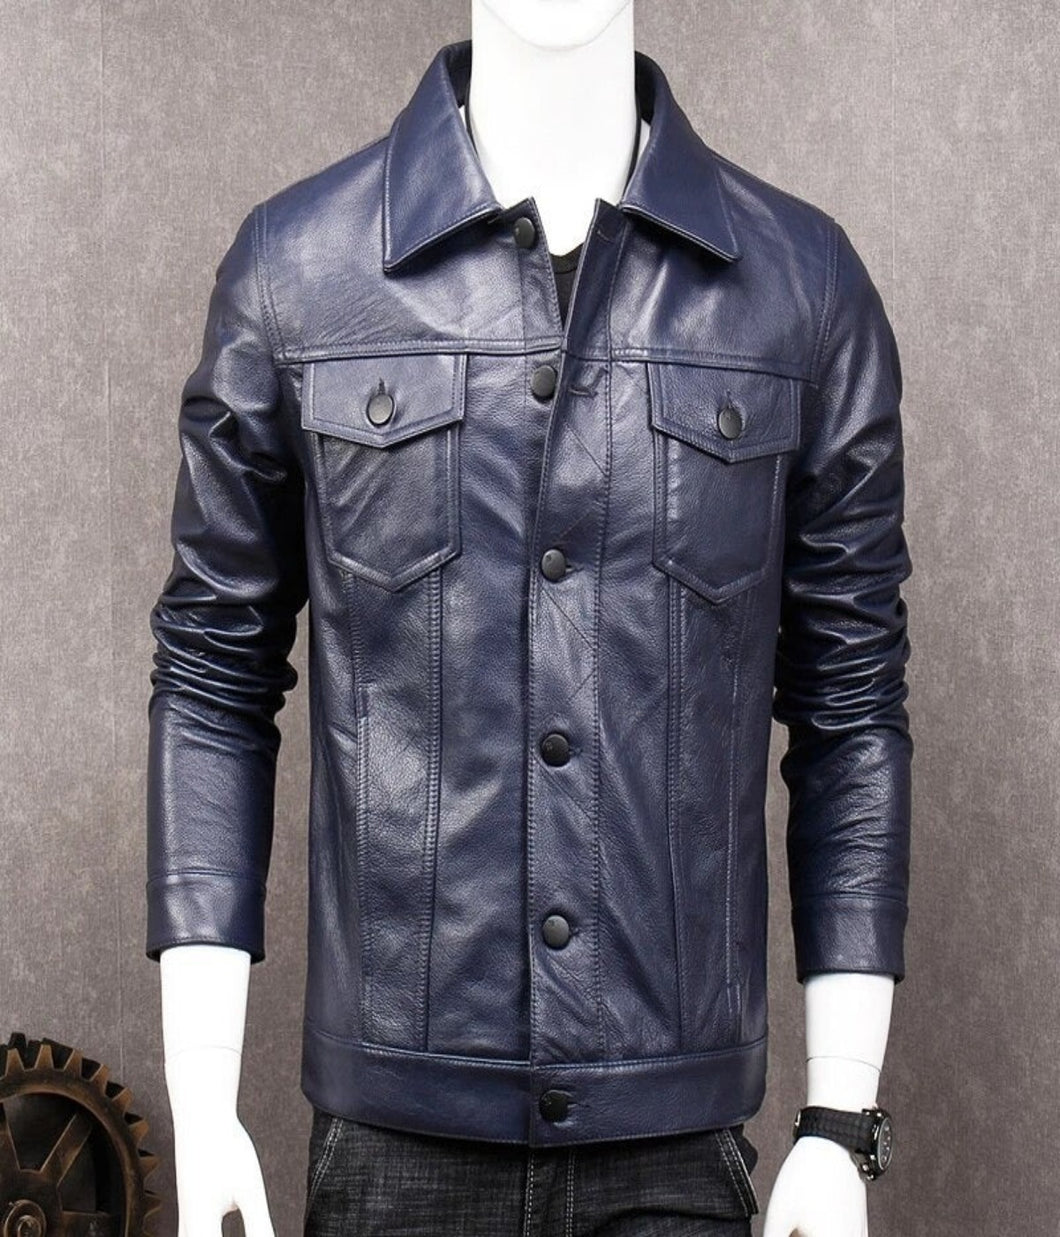 Men's Stylish Dark Blue Leather Jacket